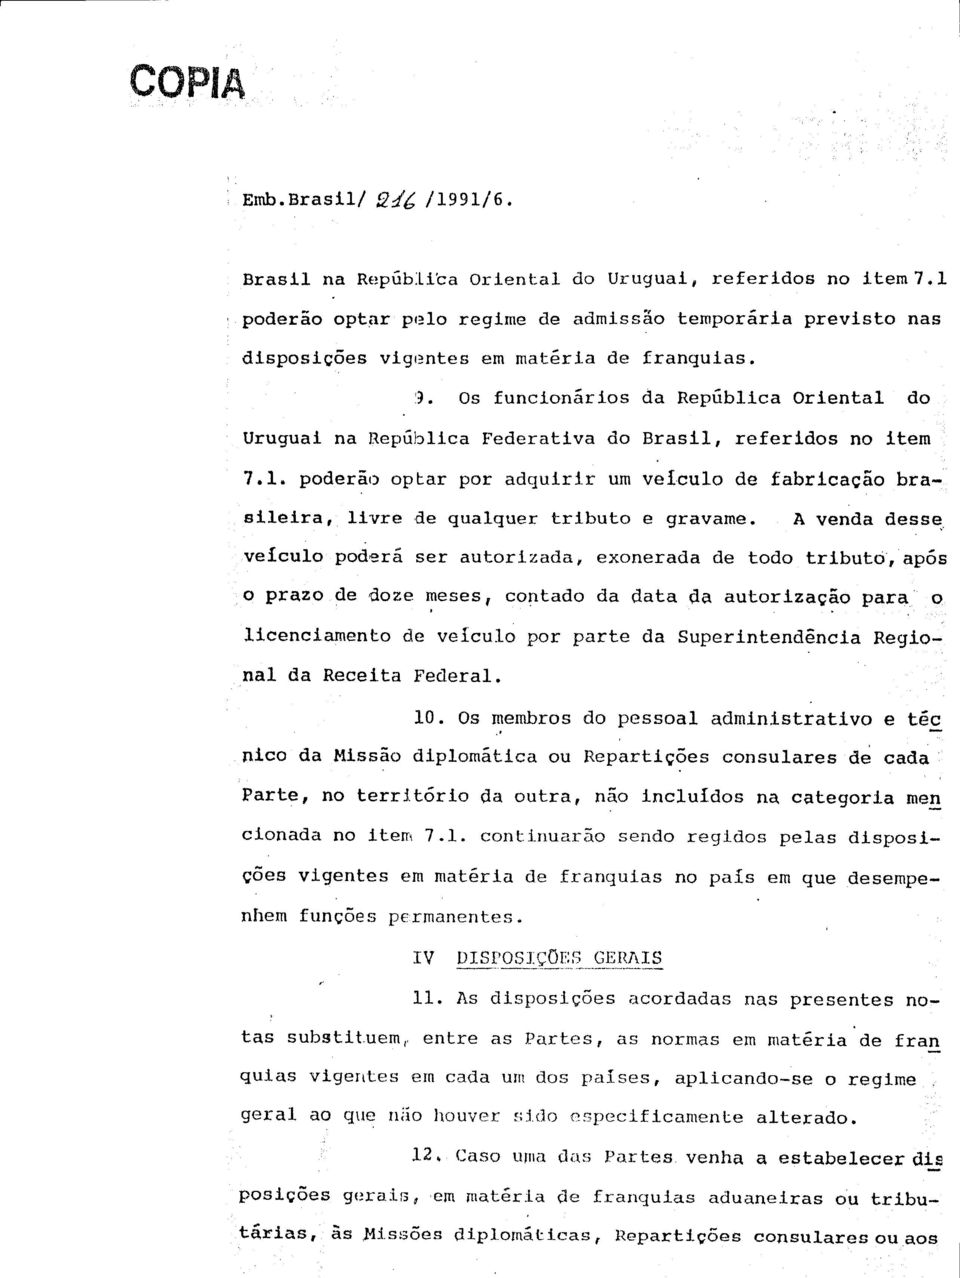 Os funcionários da República Oriental do Uruguai na República Federativa do Brasil, referidos no item 7.1.